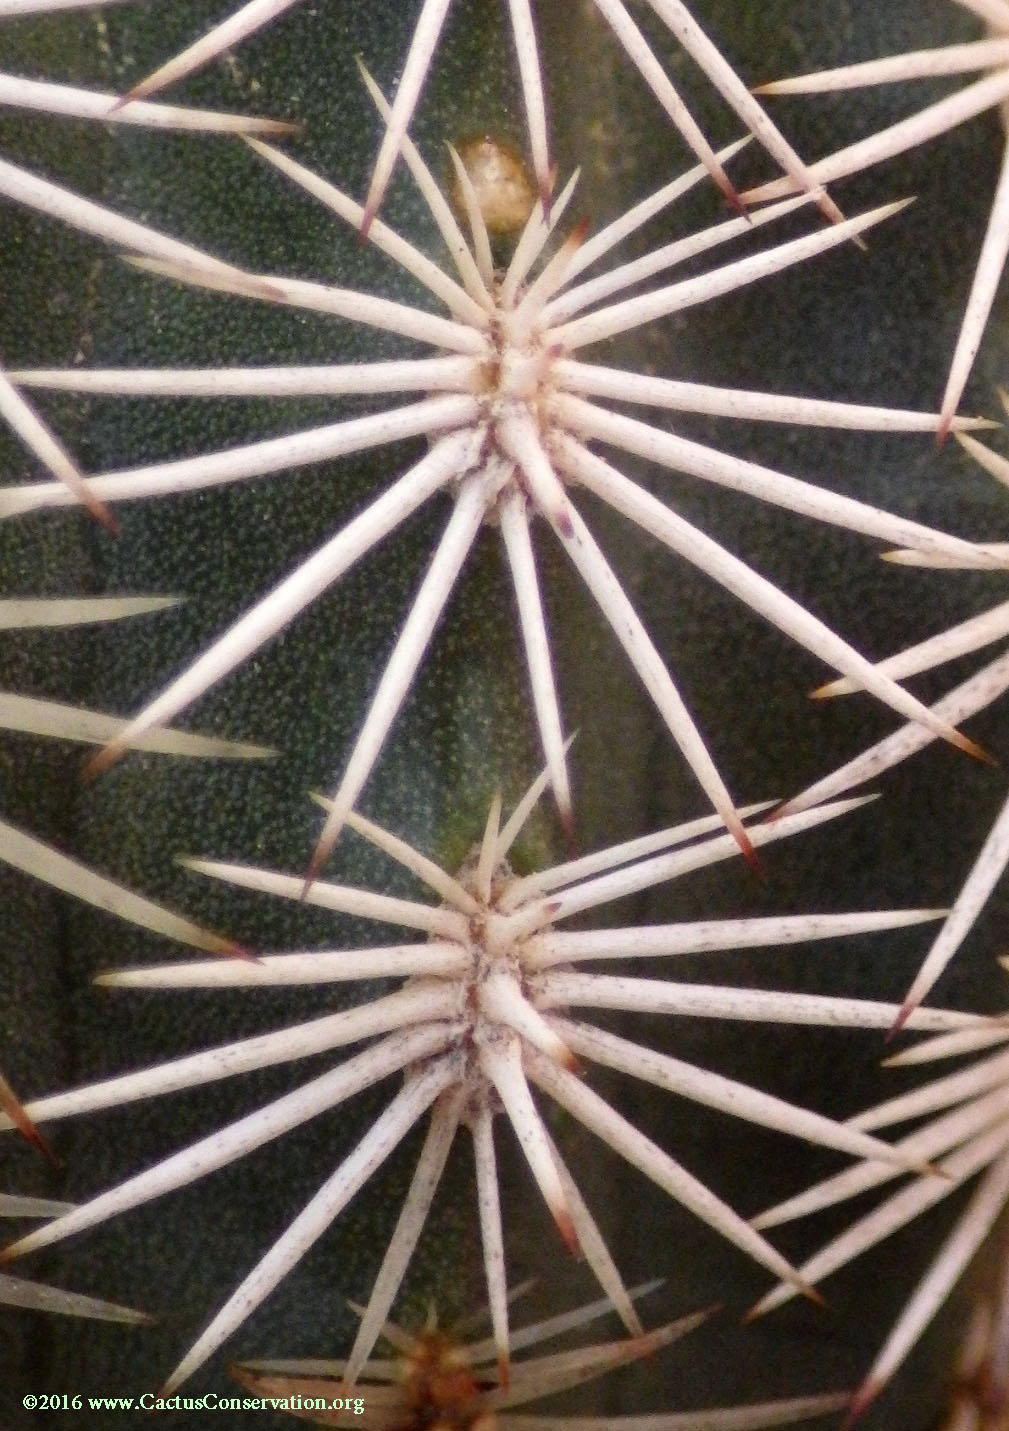 Echinocereus pectinatus var. wenegeri